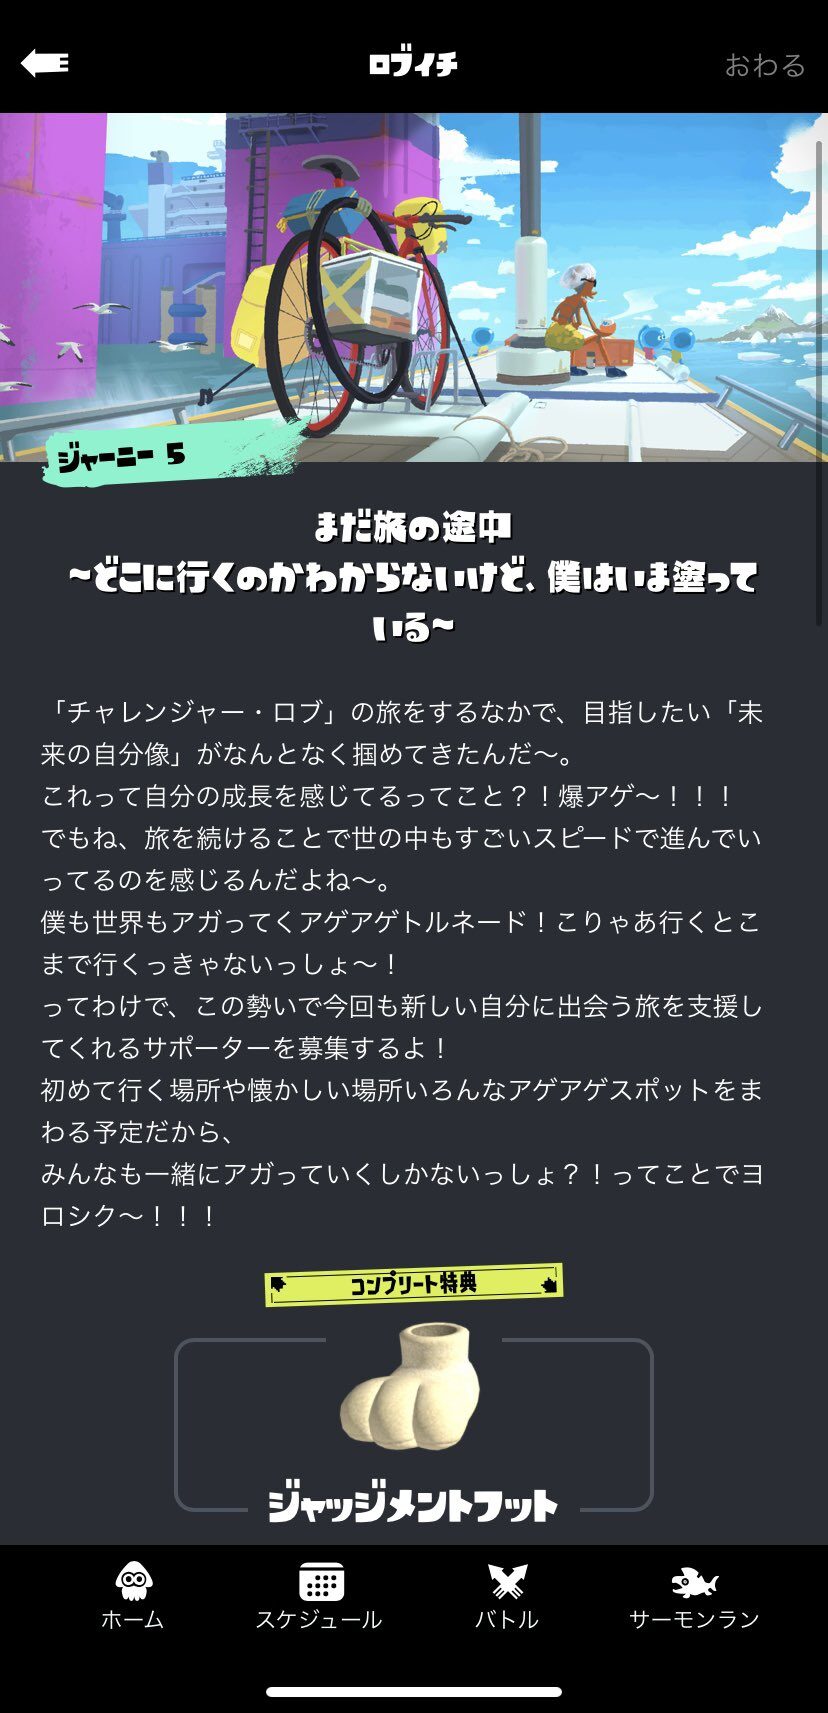 【新シーズン】ロブイチのコンプリート特典「ジャッジメントフット」登場決定！！